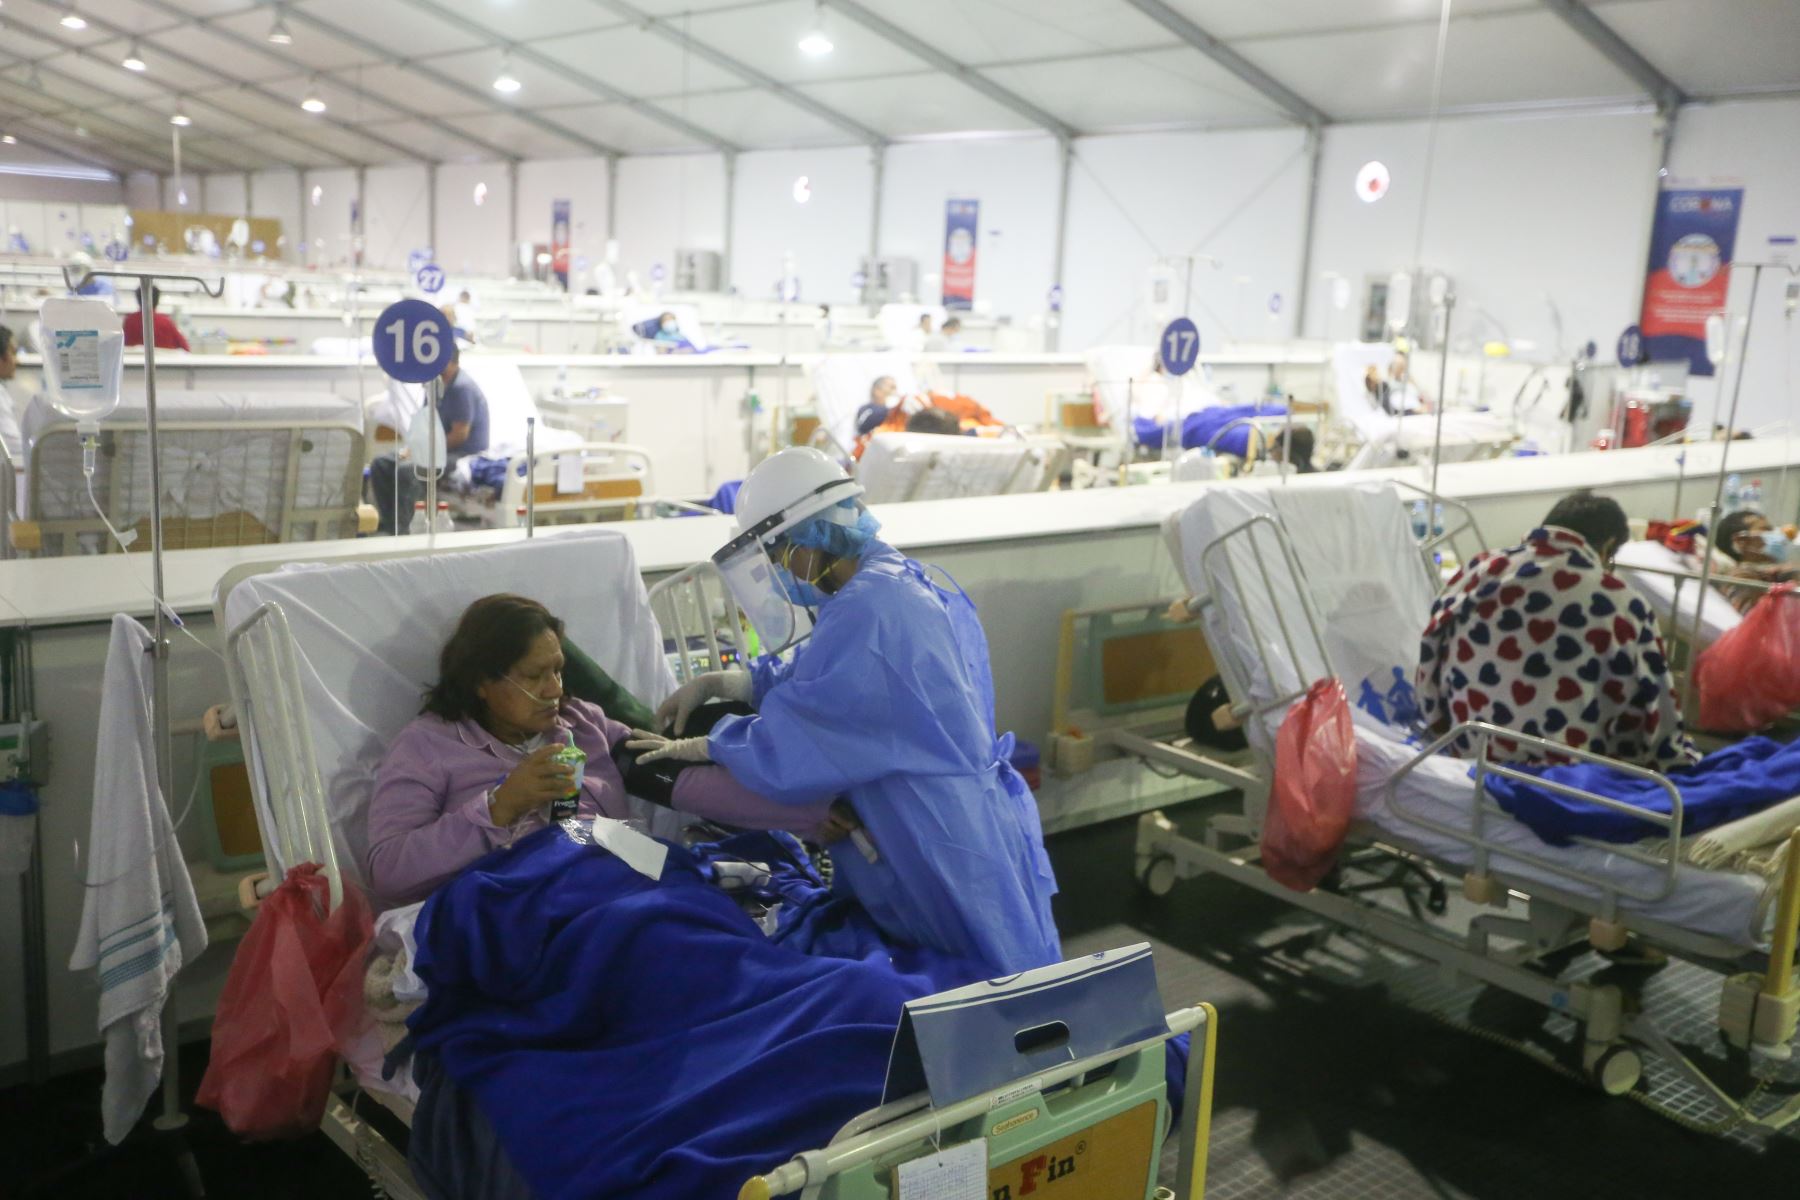 El Minsa informó que a la fecha hay 3,212 pacientes hospitalizados por la covid-19, de los cuales 860 se encuentran en unidades de cuidados intensivos (UCI) con ventilación mecánica. ANDINA/Jhonel Rodríguez Robles